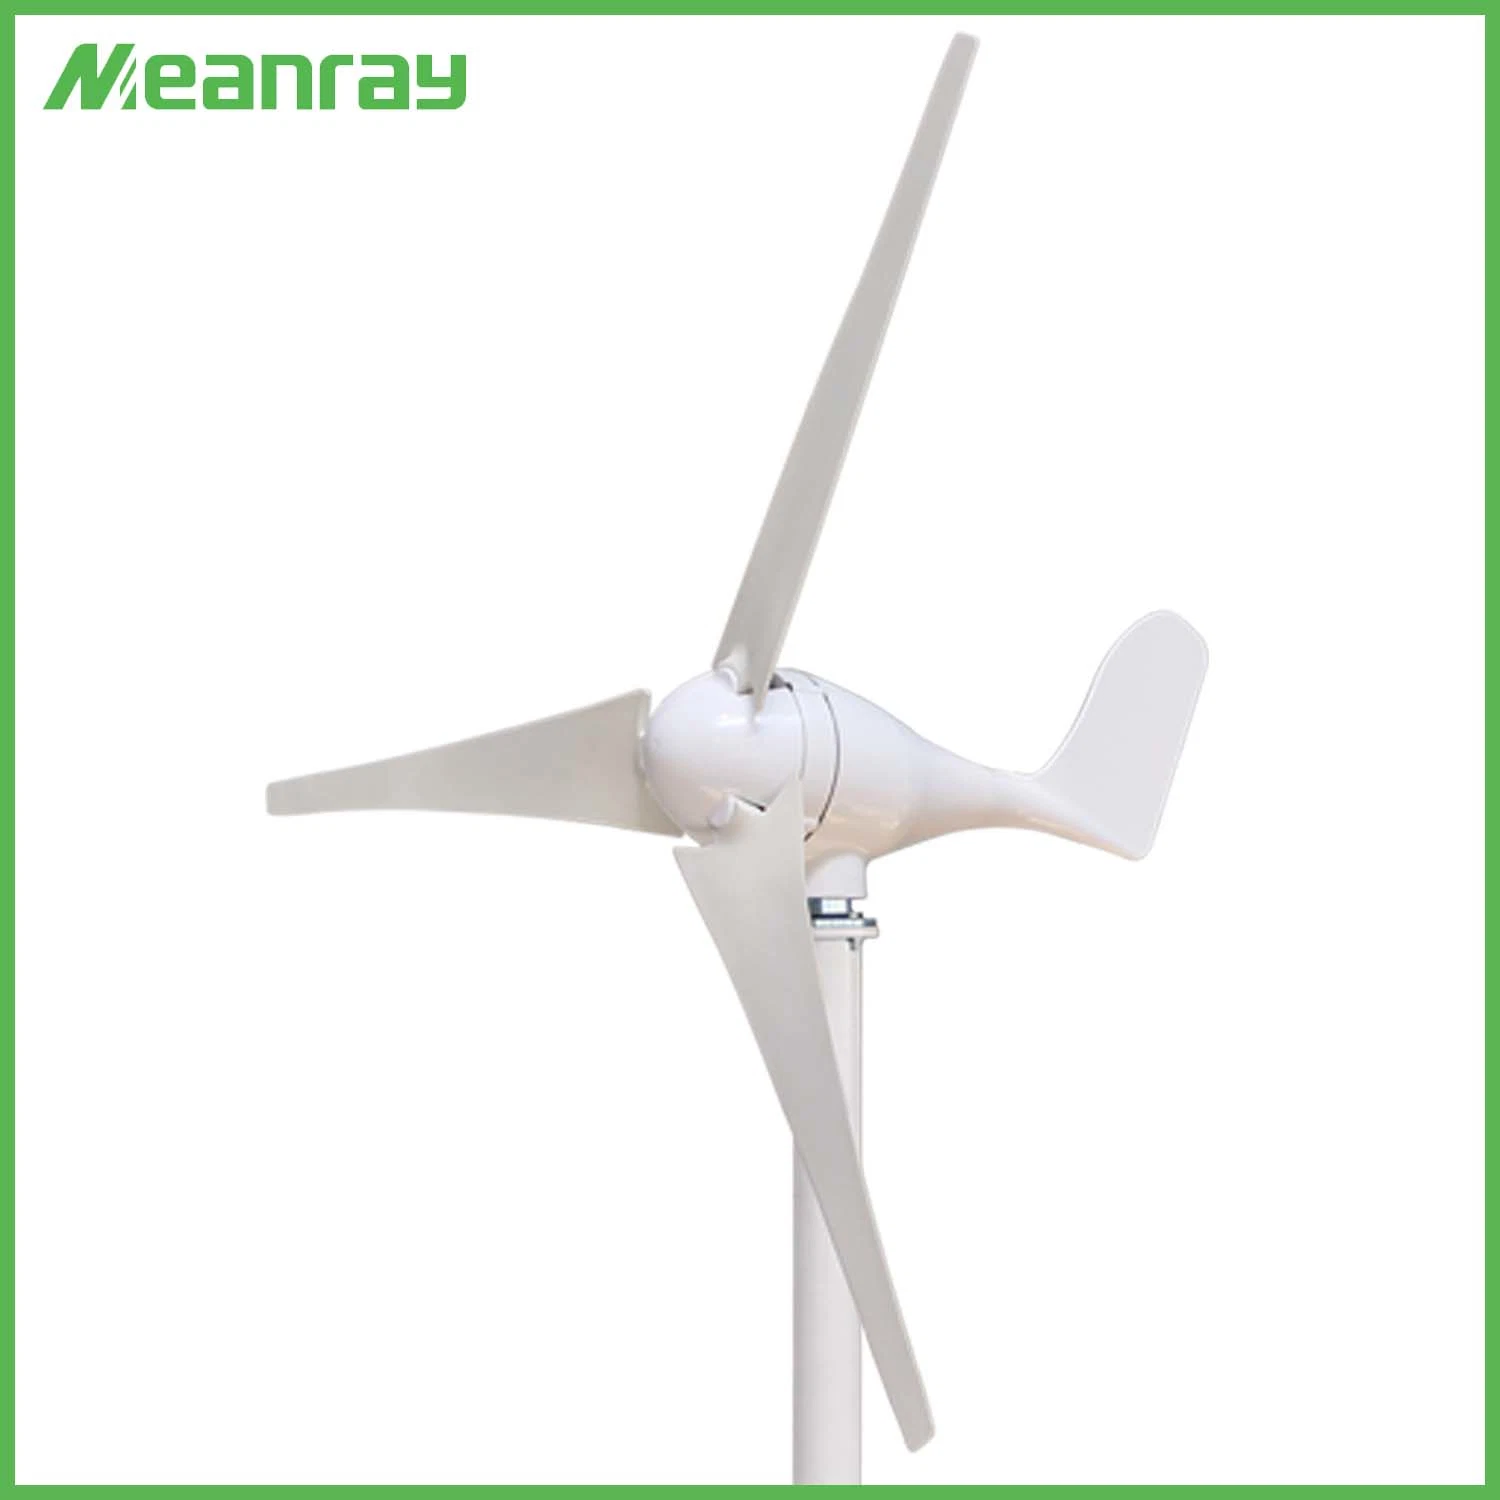 5kw éolienne générateur pour l'énergie éolienne et solaire